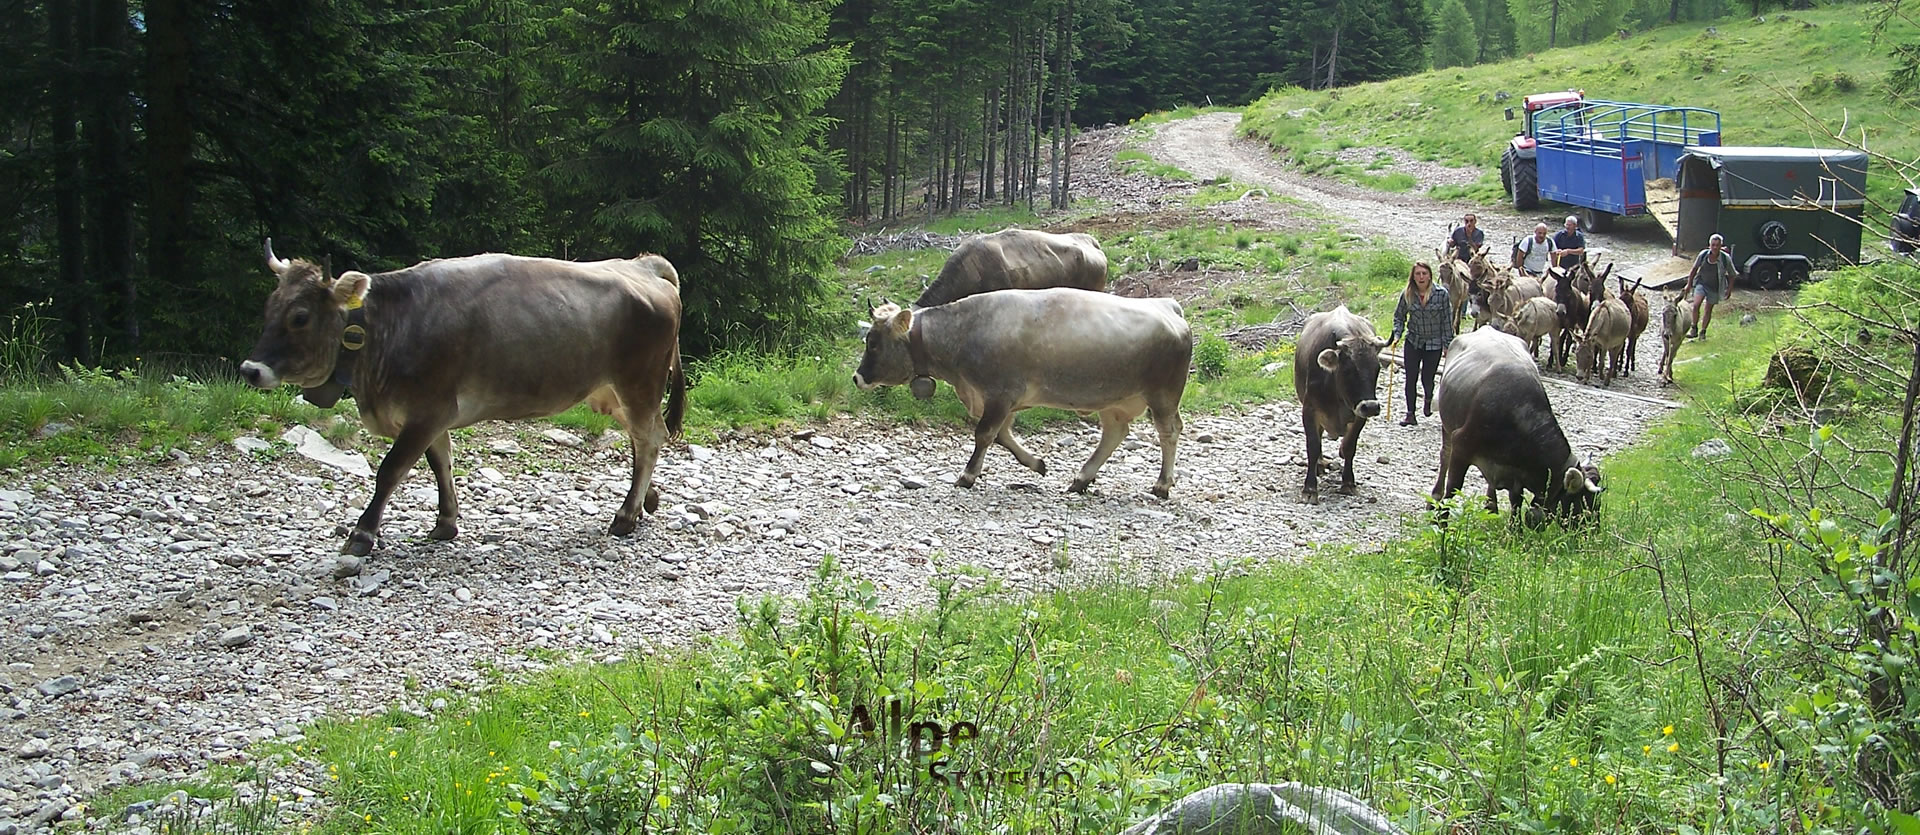 Azienda agricola Alpe Stavello - Pascolo degli animali Valgerola